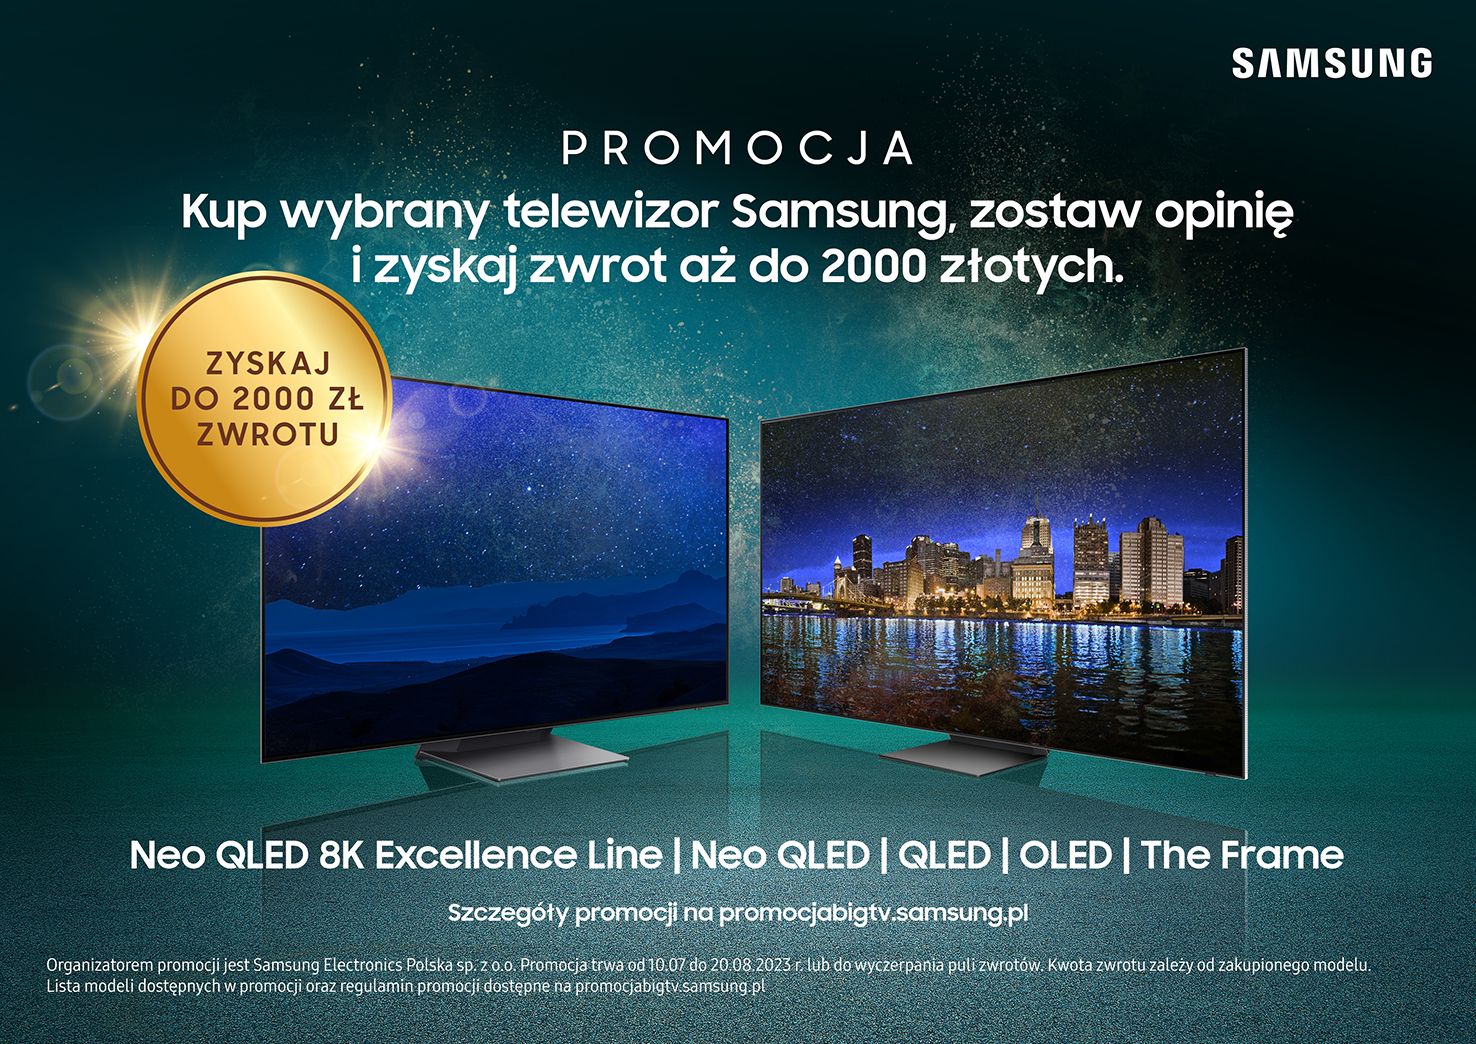 Telewizory Samsung w promocji ze zwrotem. Można odzyskać nawet 2000 złotych